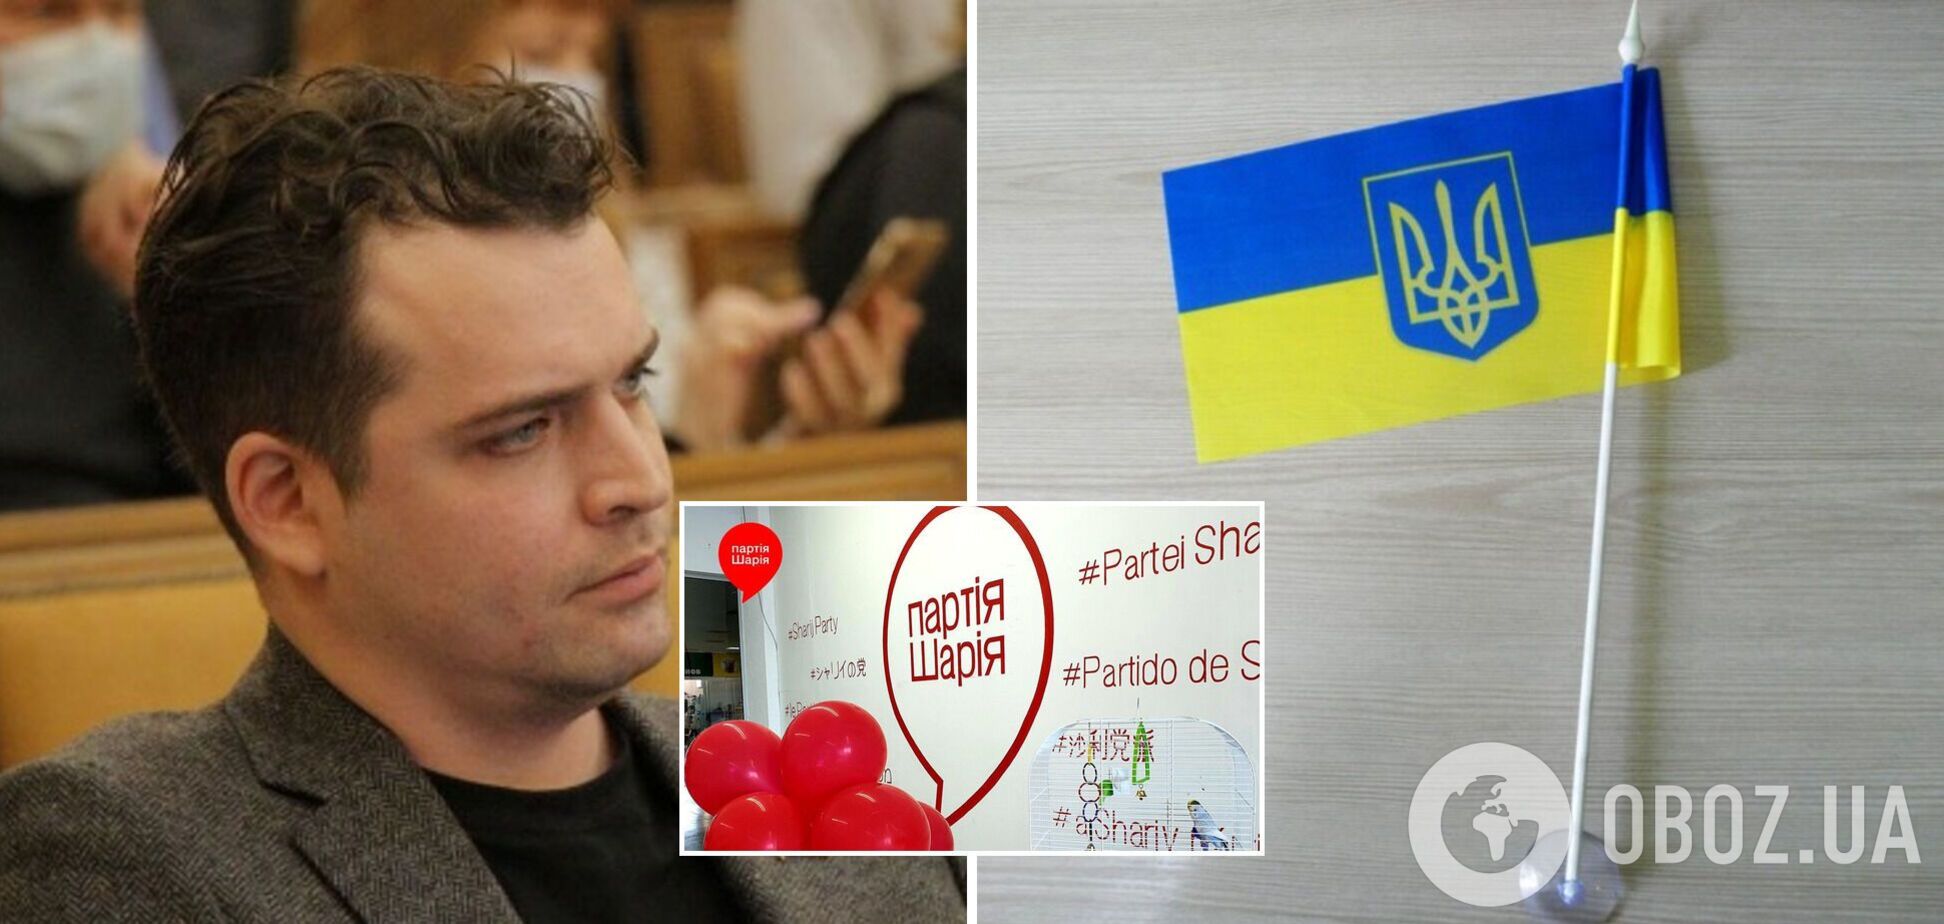 В Одессе депутат от 'Партии Шария' на сессии горсовета выбросил флаги Украины, в полиции начали расследование. Видео